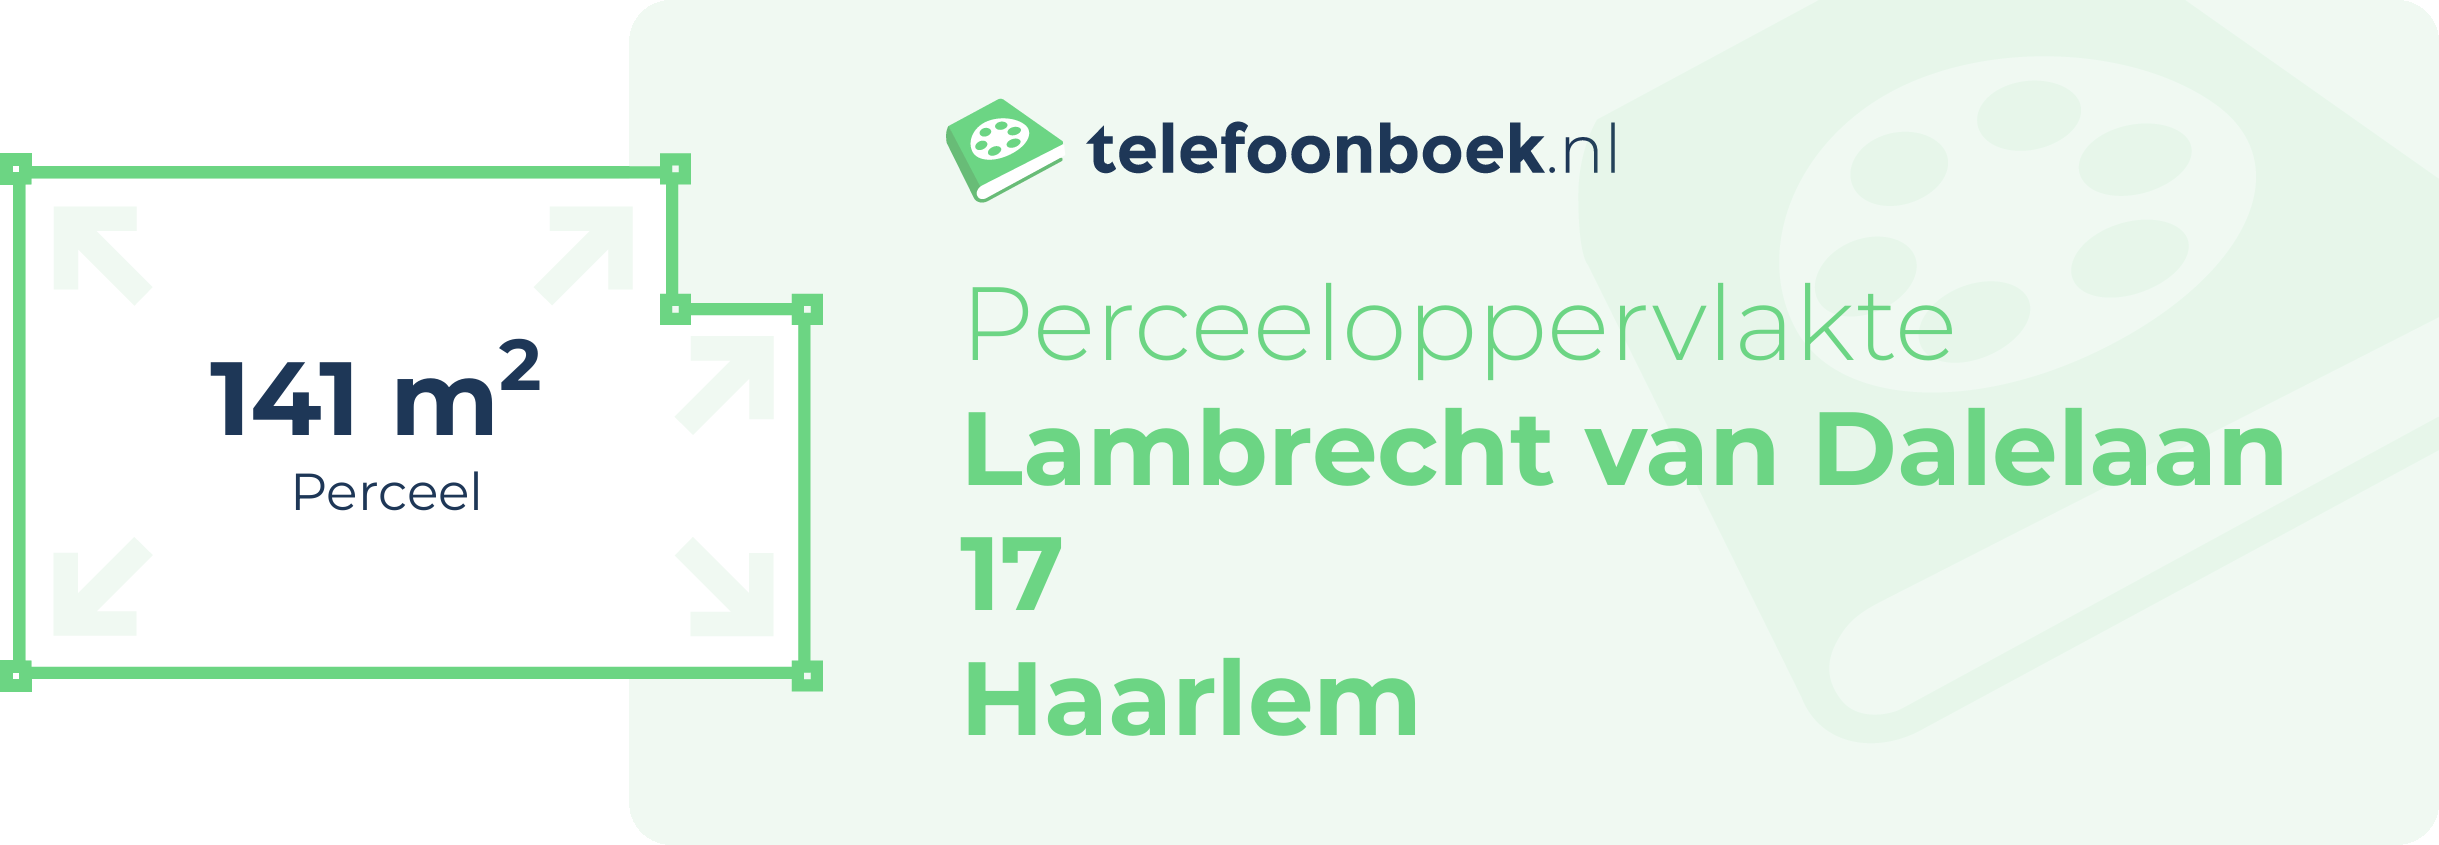 Perceeloppervlakte Lambrecht Van Dalelaan 17 Haarlem